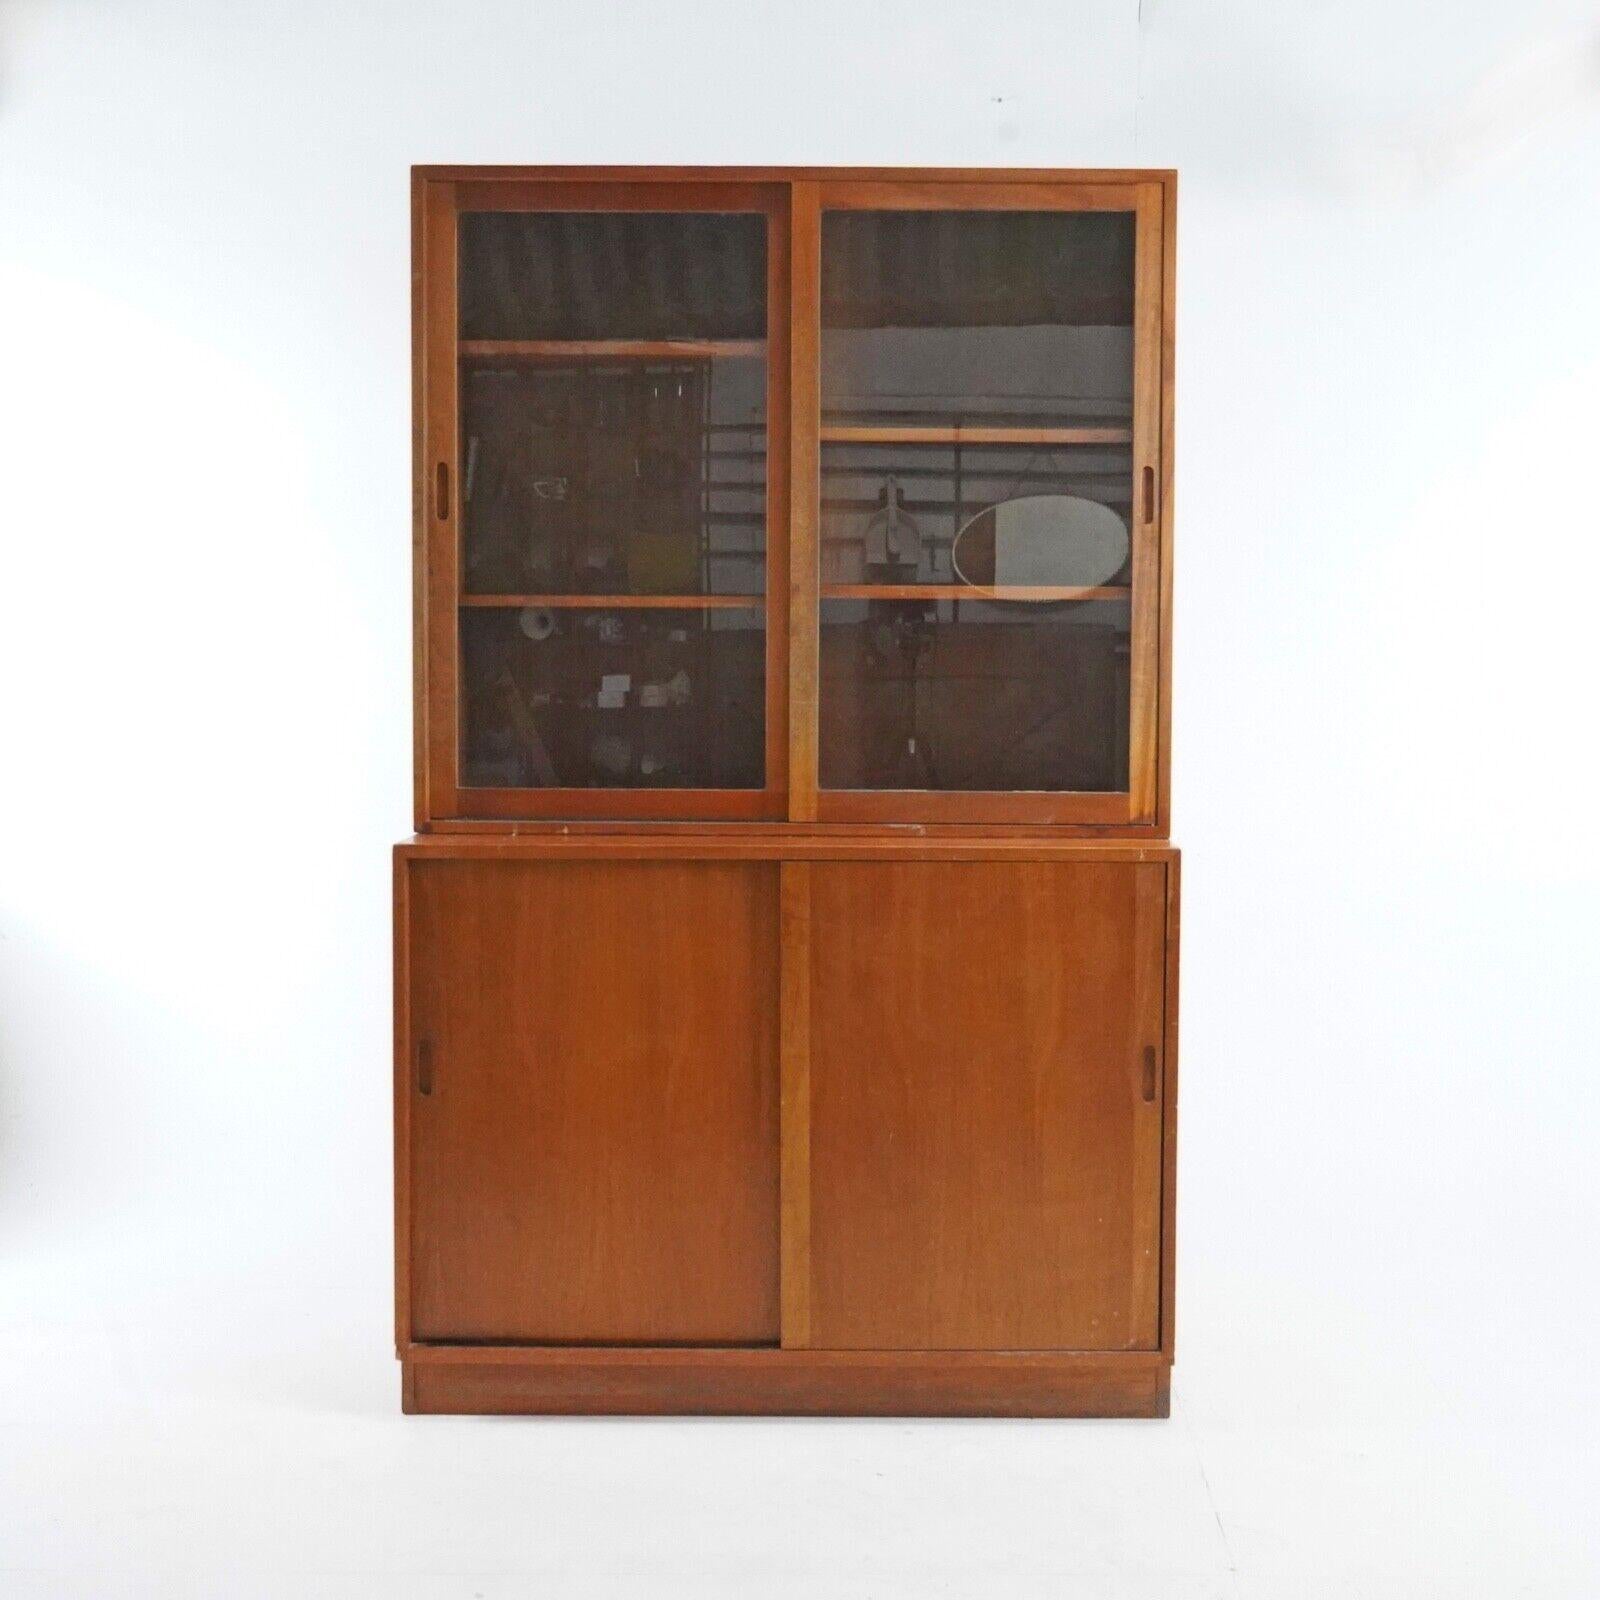 British Vintage 1950's Teak Glazed Display Cabinet Kitchen Storage Unit -Linen Cupboard